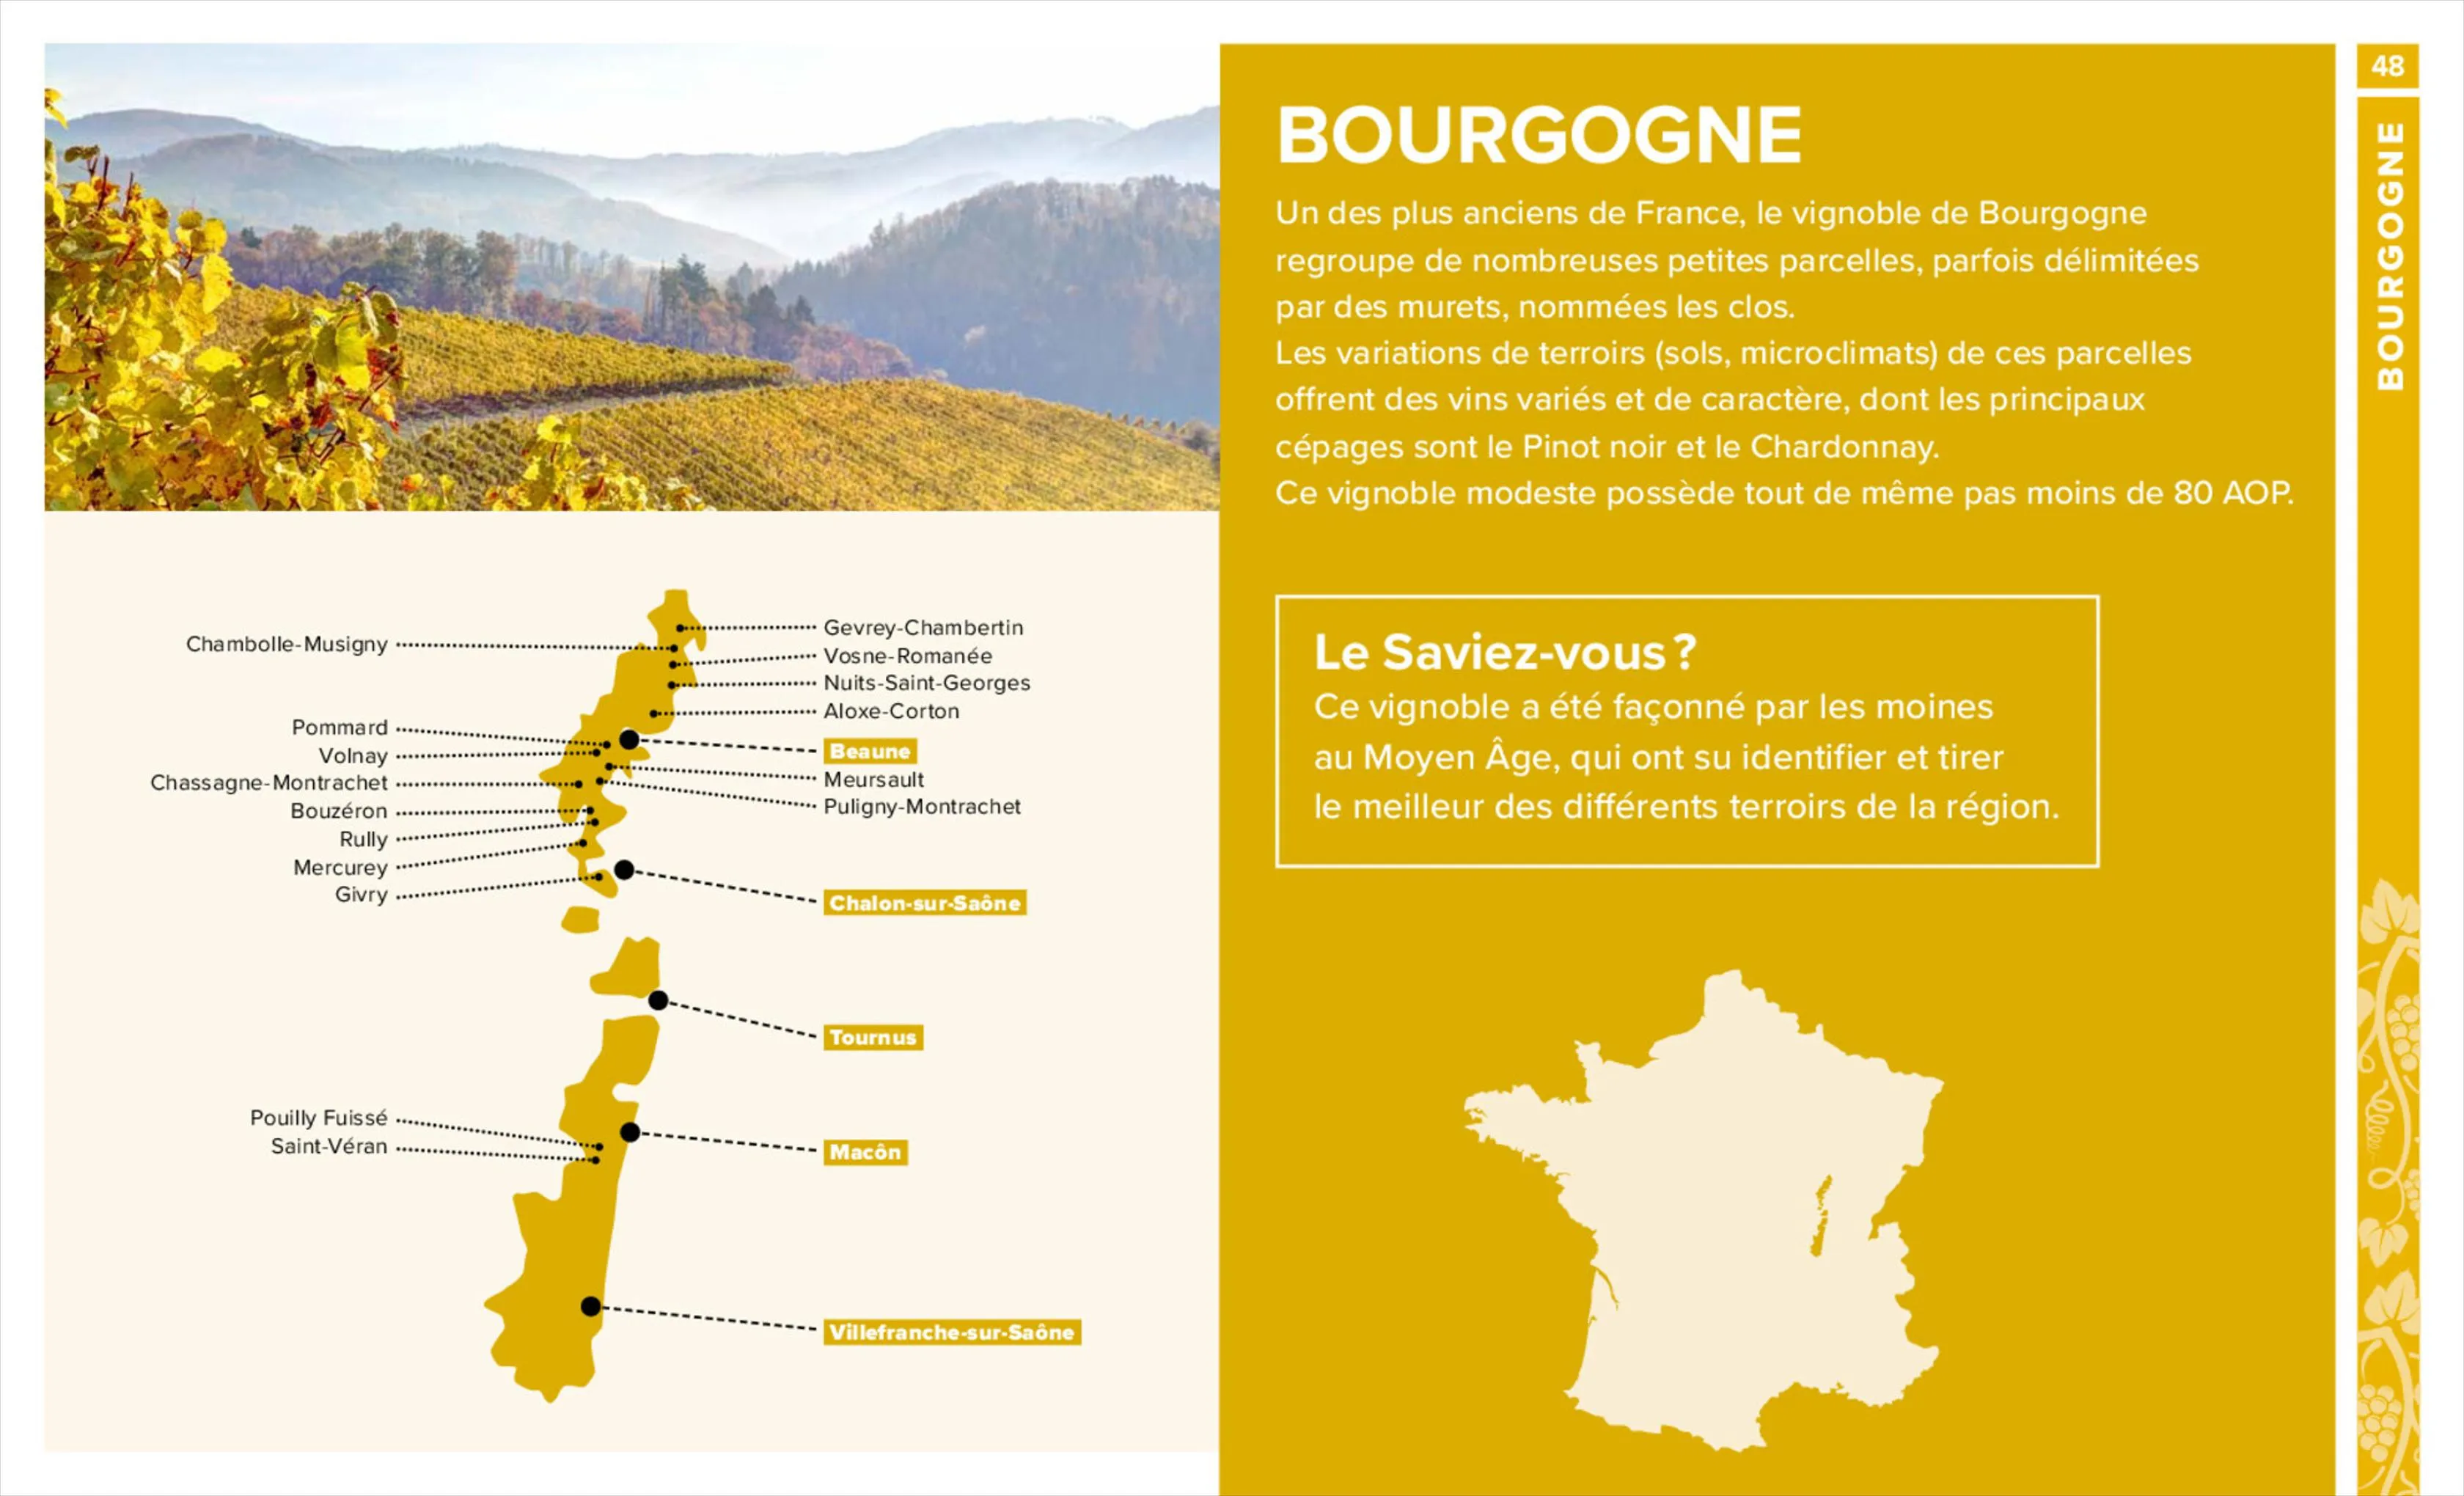 Catalogue Foire aux vins, page 00048